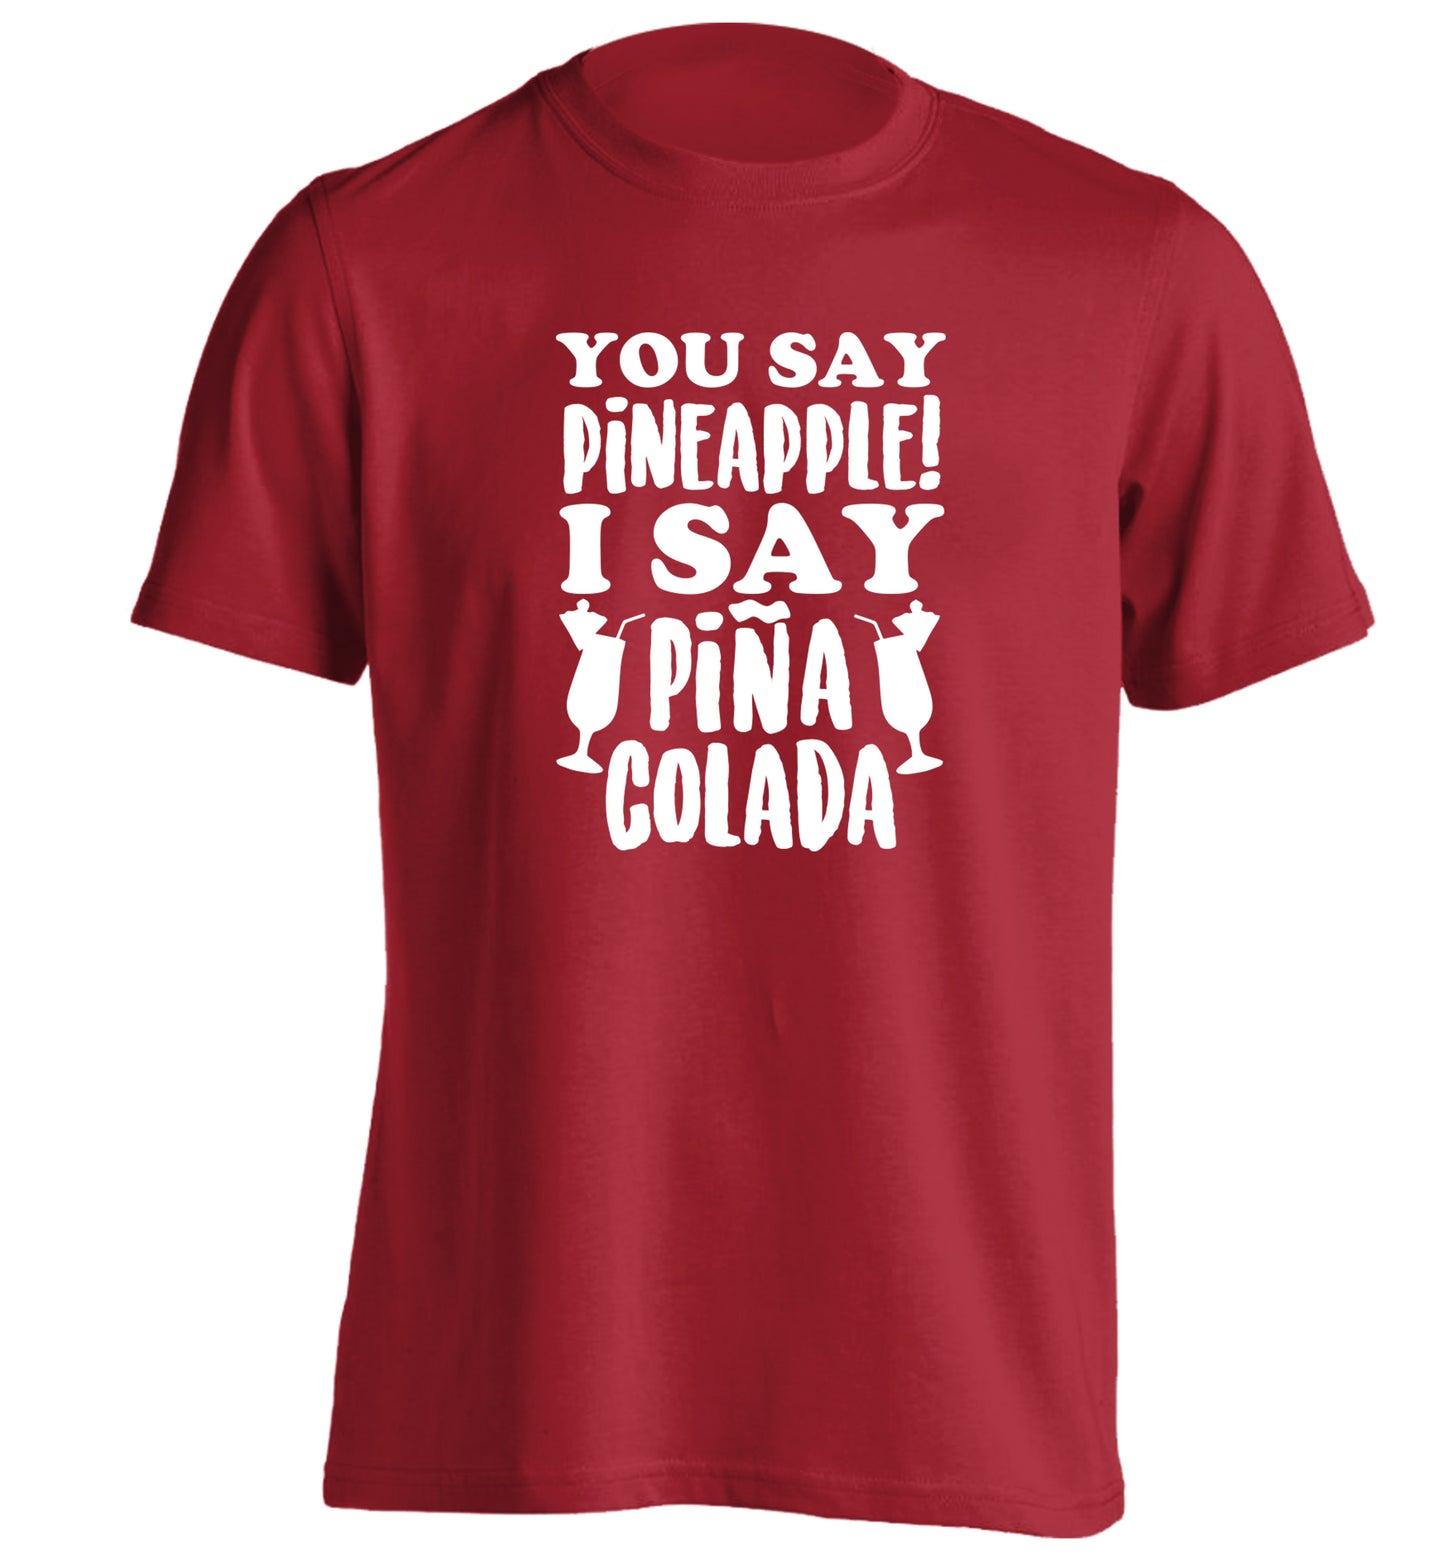 You say pinapple I say Pina colada adults unisex red Tshirt 2XL